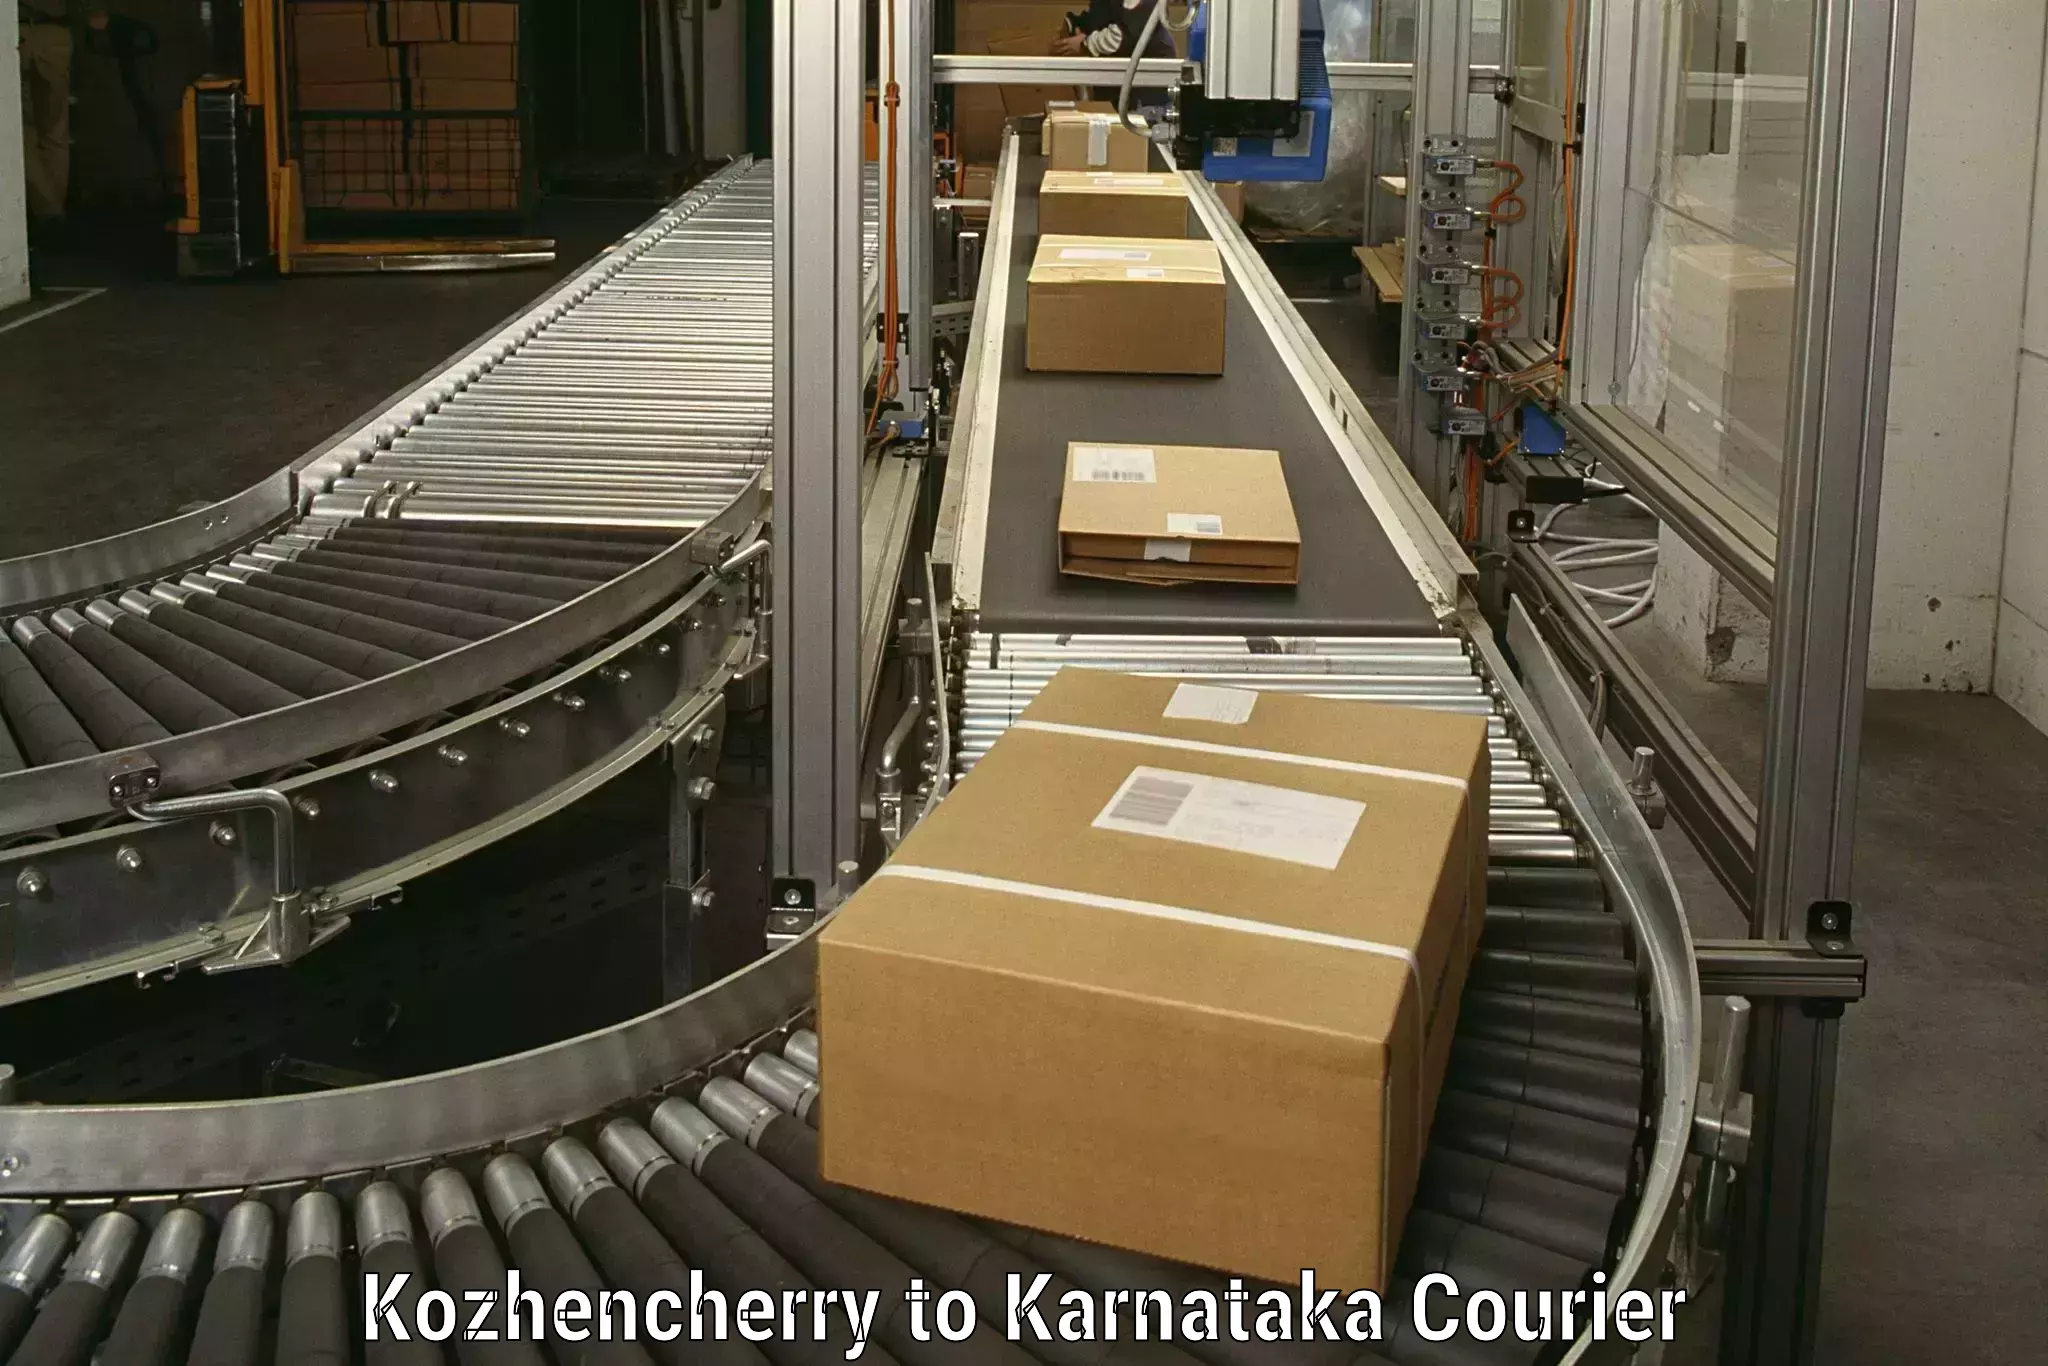 Furniture transport service Kozhencherry to Karnataka